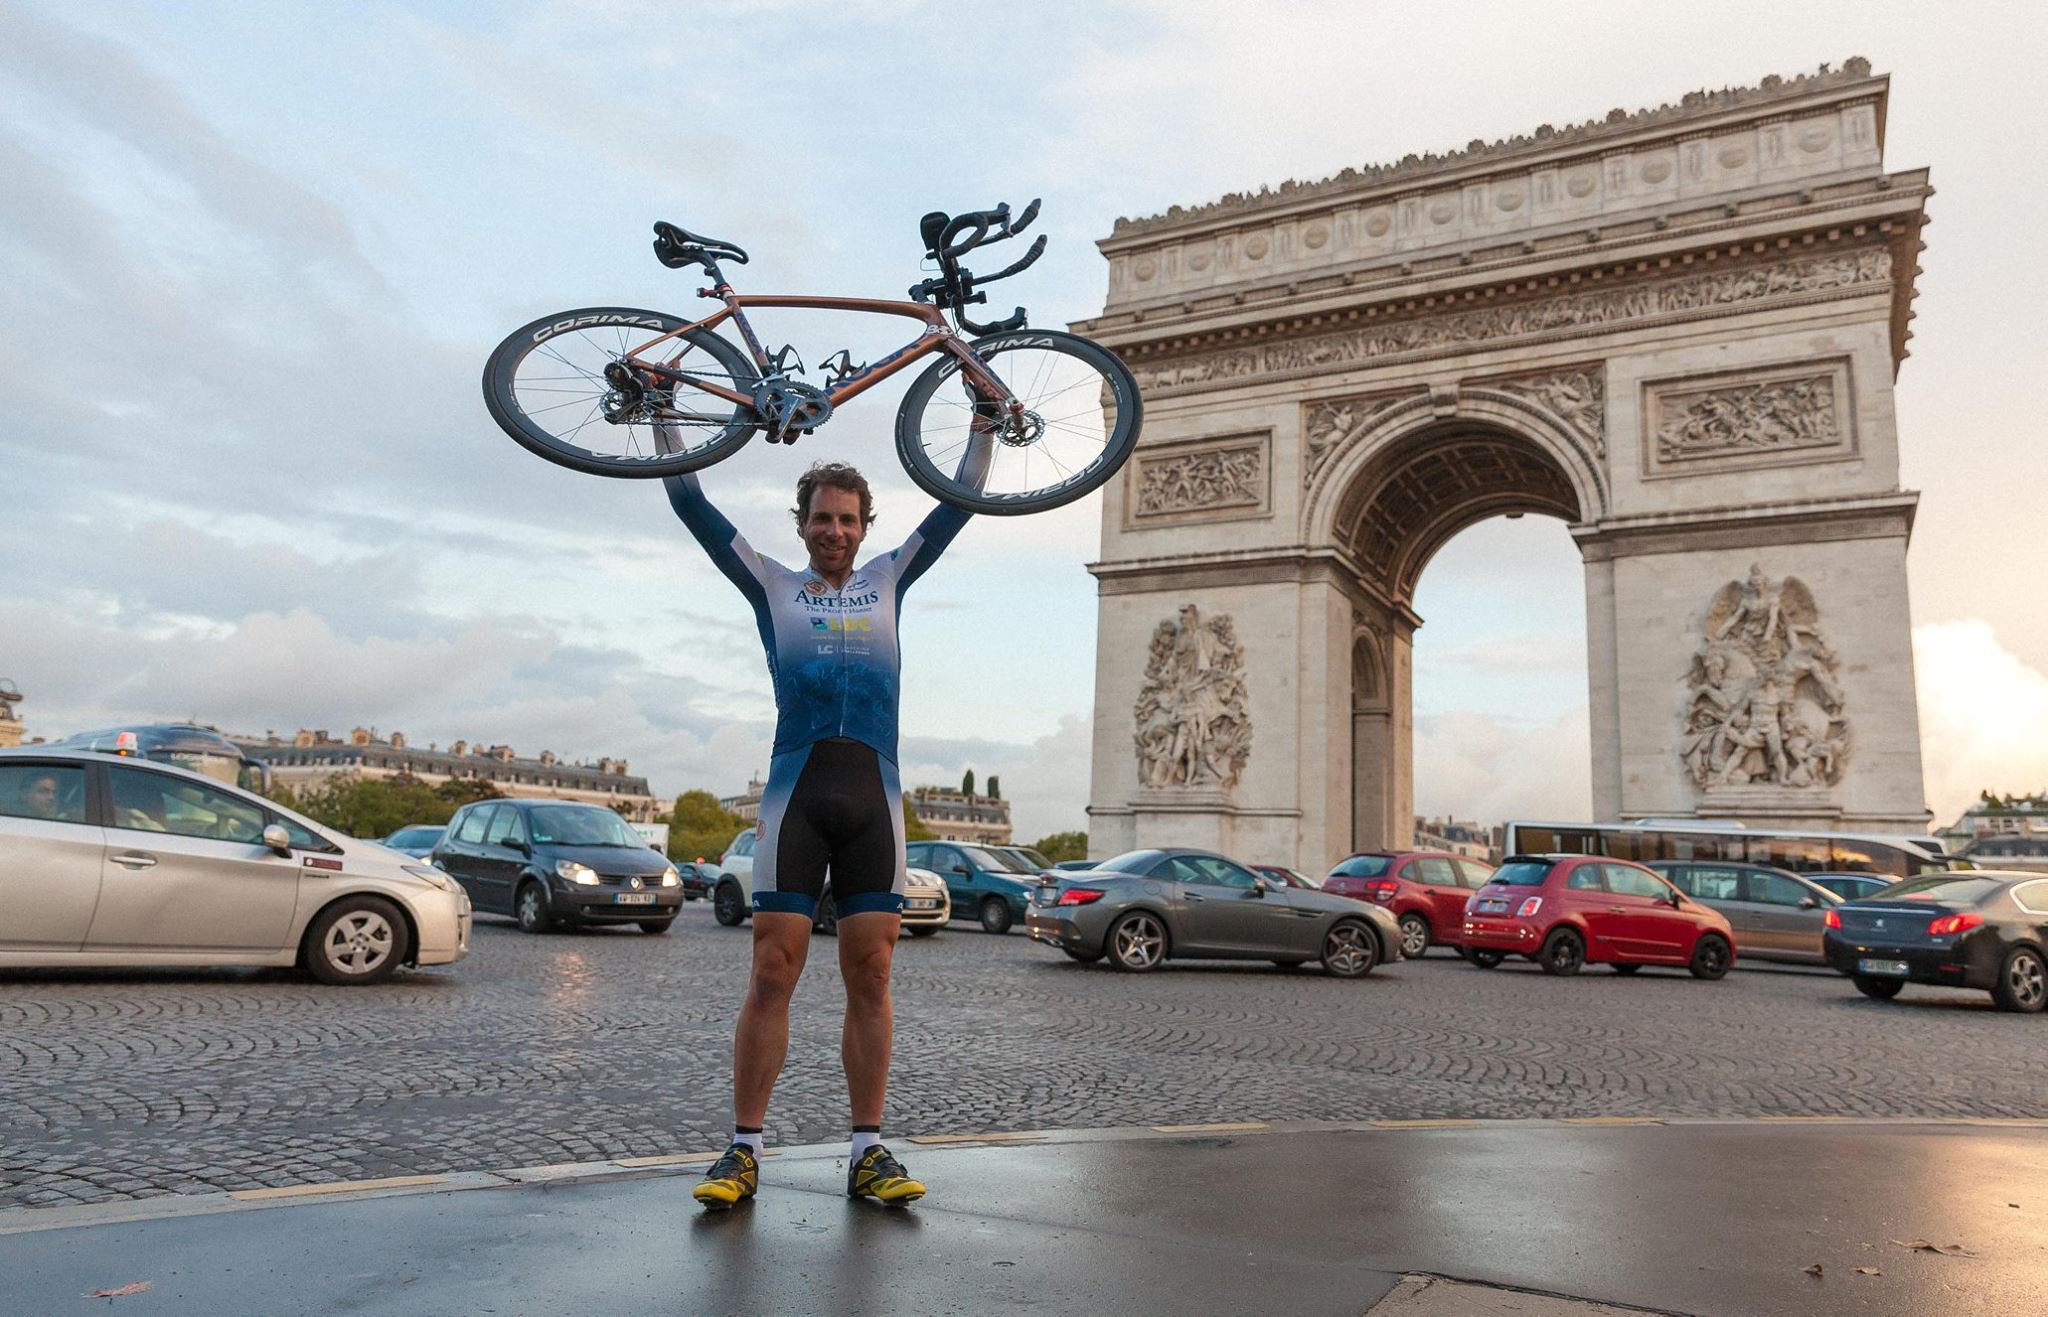 44 nappal döntötték meg a Föld körüli biciklizés világrekordját